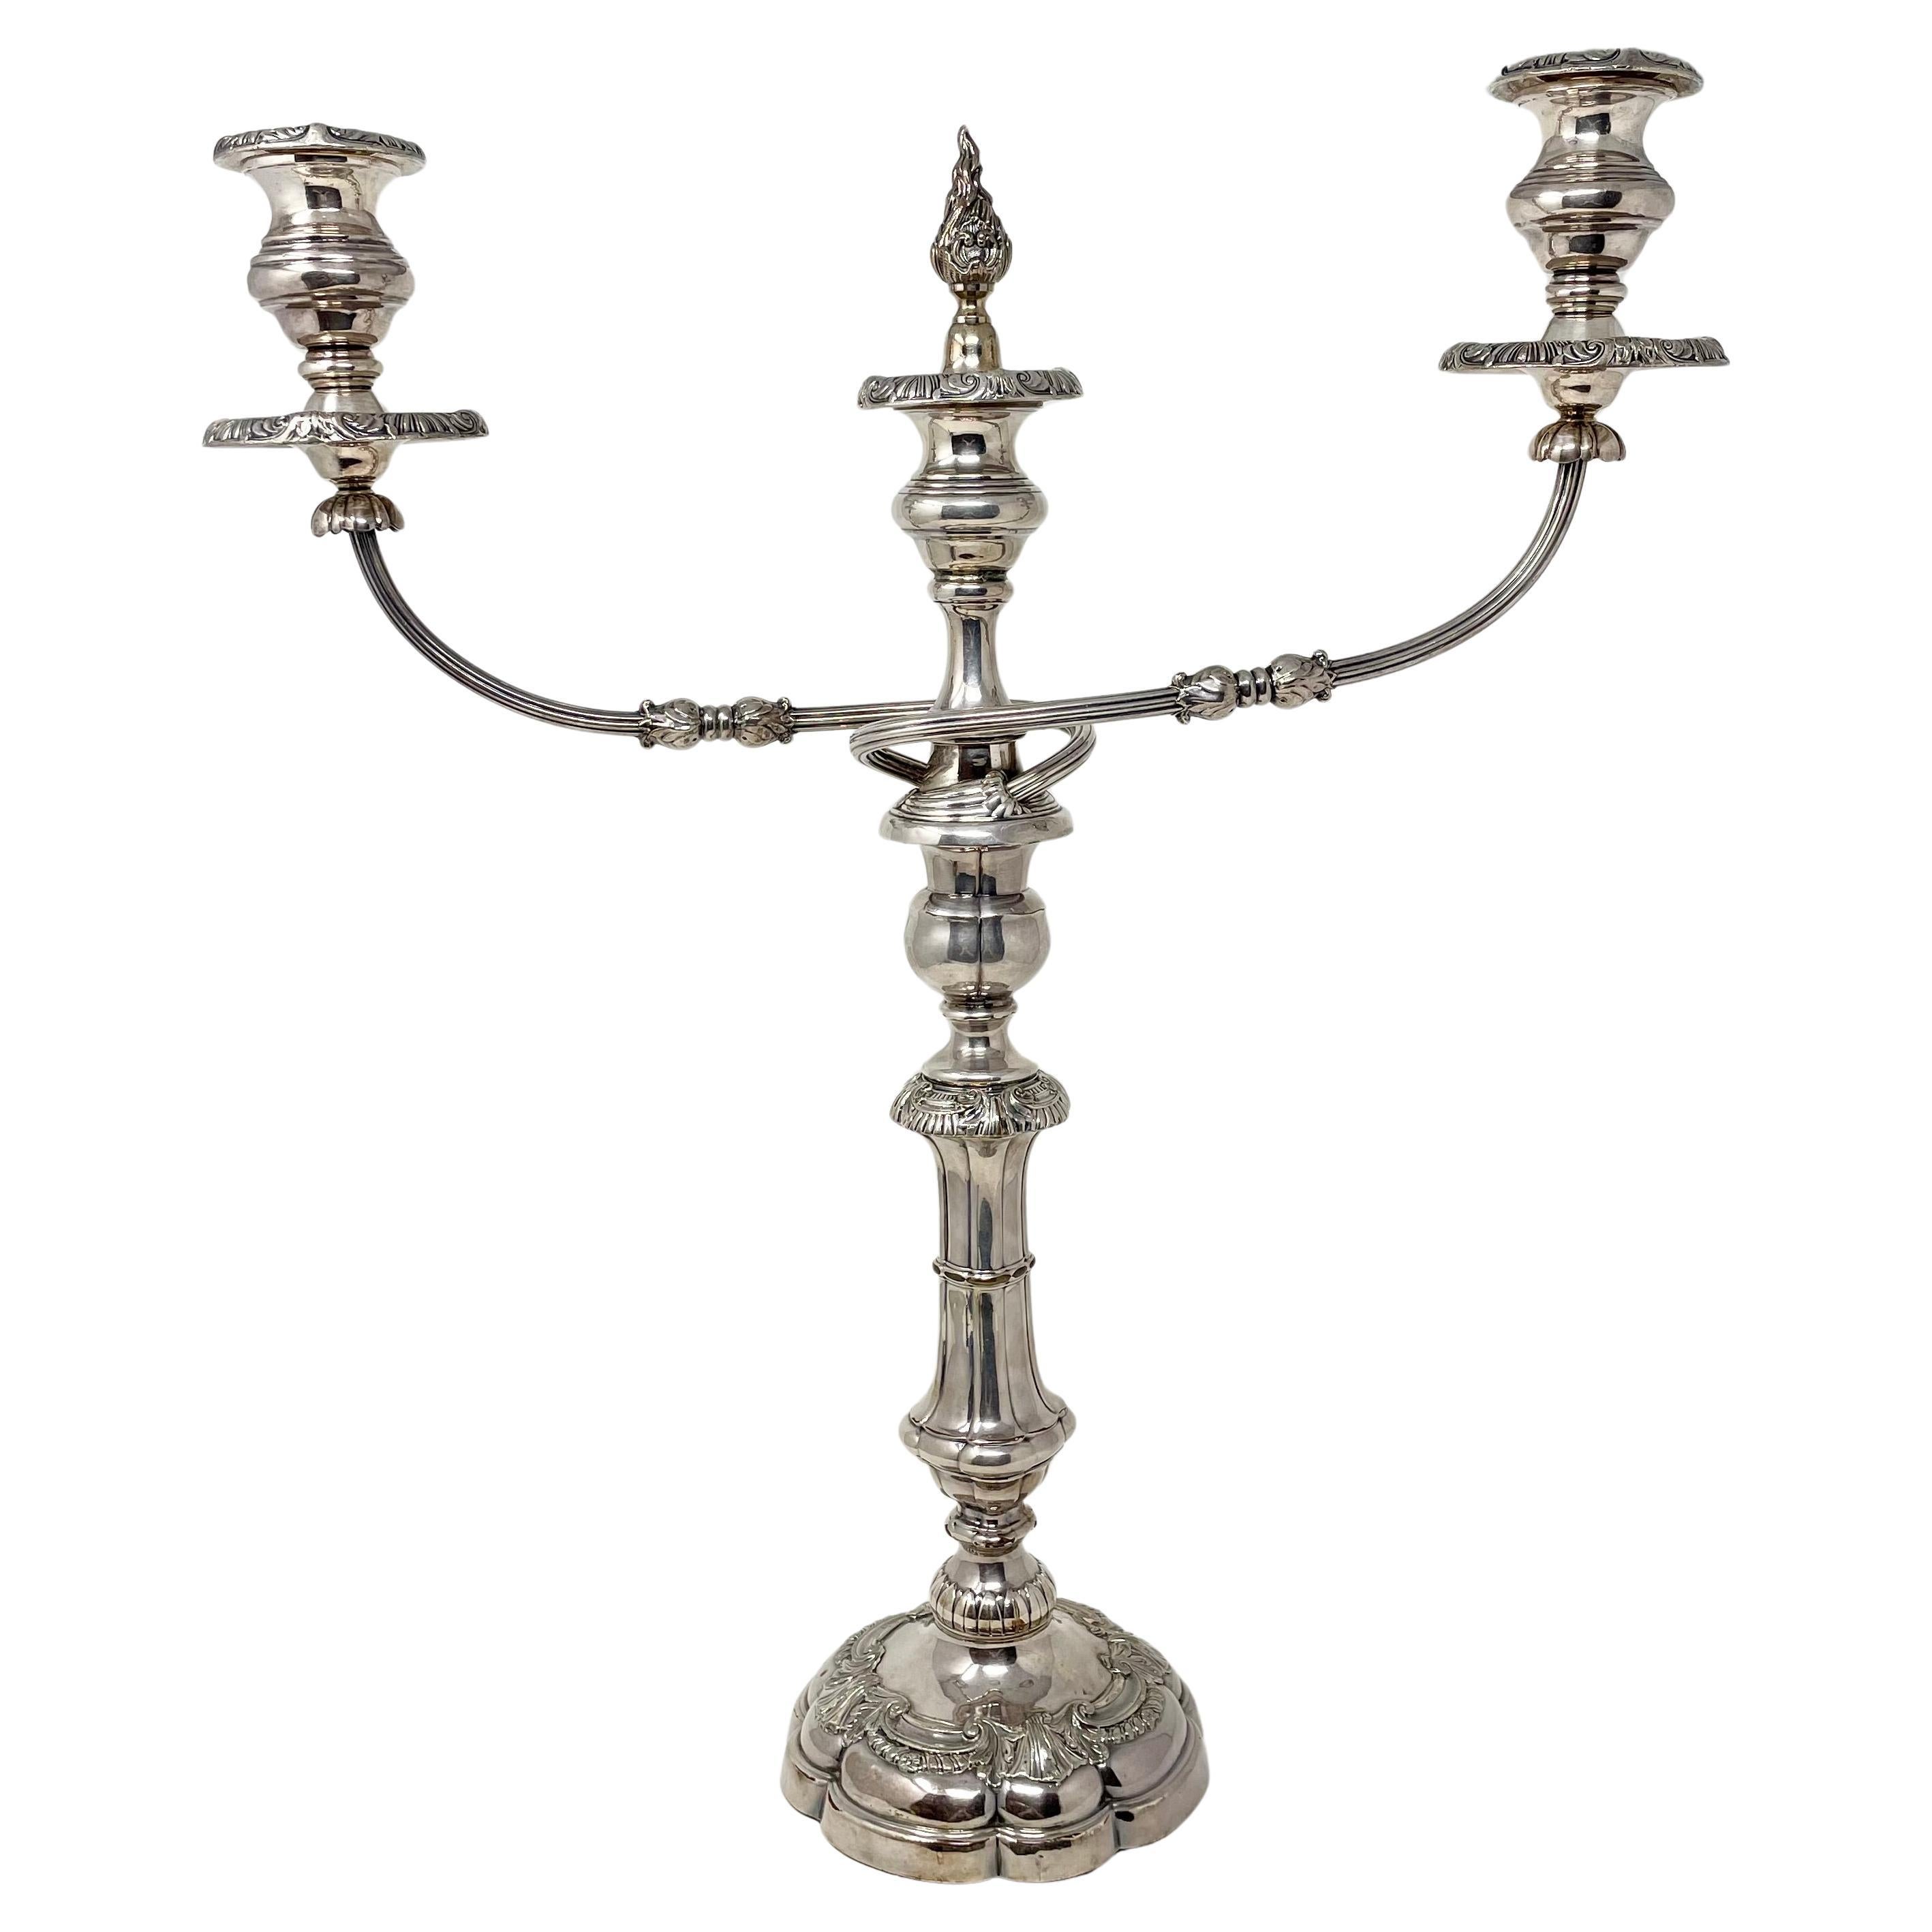 Paire d'anciens candélabres convertibles anglais en argent plaqué Sheffield, vers 1870.
D'après les 3 dernières photos, ces pièces se transforment de candélabres à trois coupes en chandeliers à une coupe.